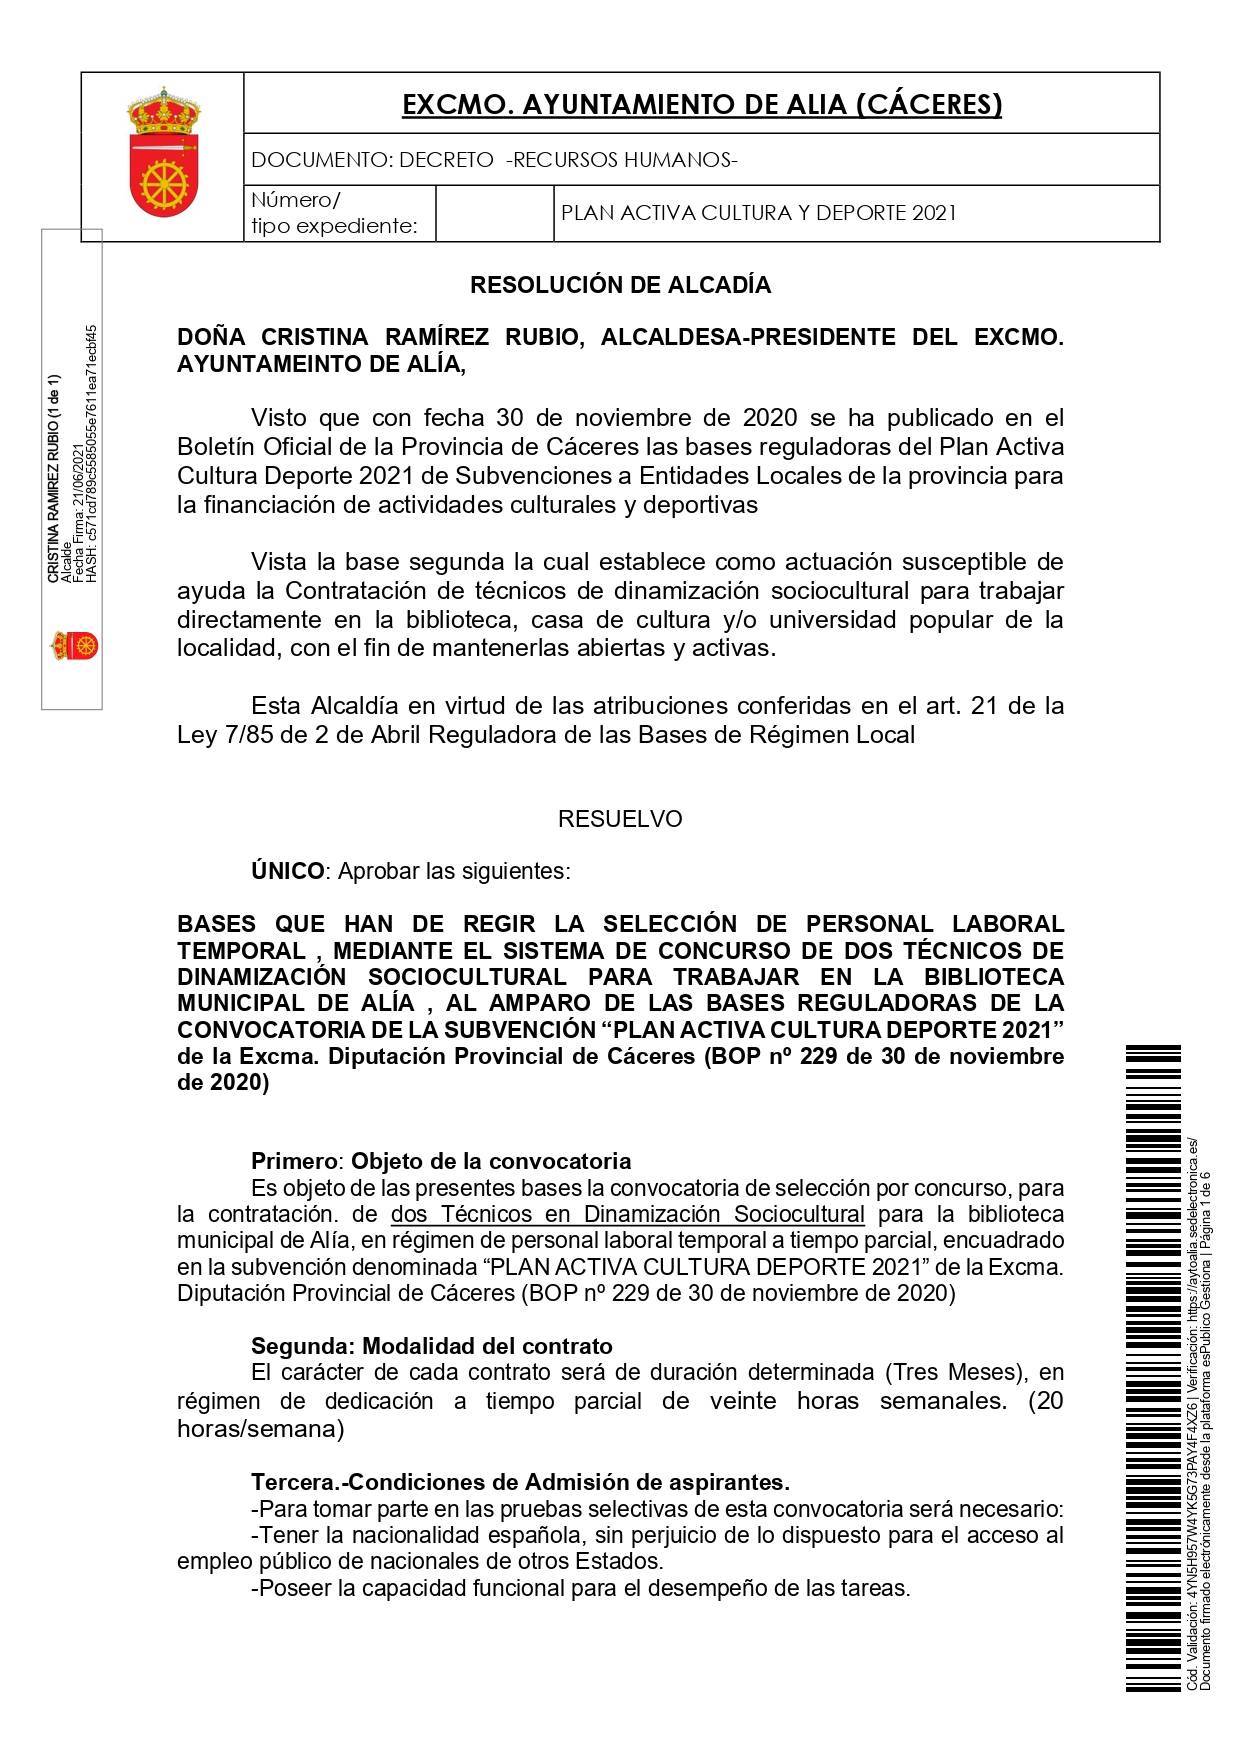 2 técnicos de dinamización sociocultural (2021) - Alía (Cáceres) 1